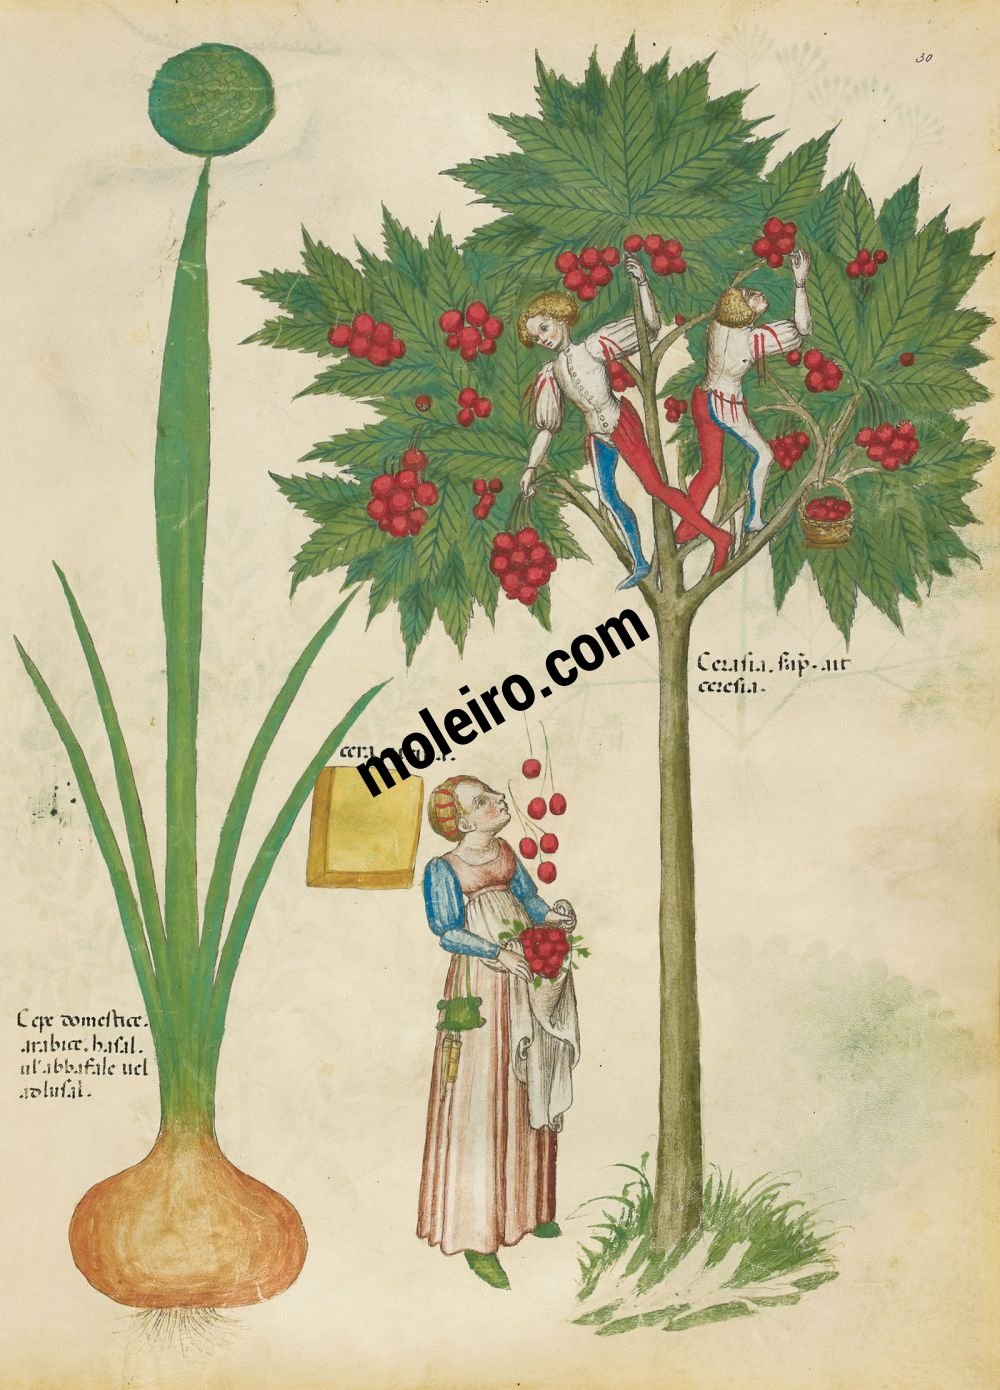 Tractatus de Herbis - Sloane 4016 f. 30r: Garden onion; yellow wax; cherries